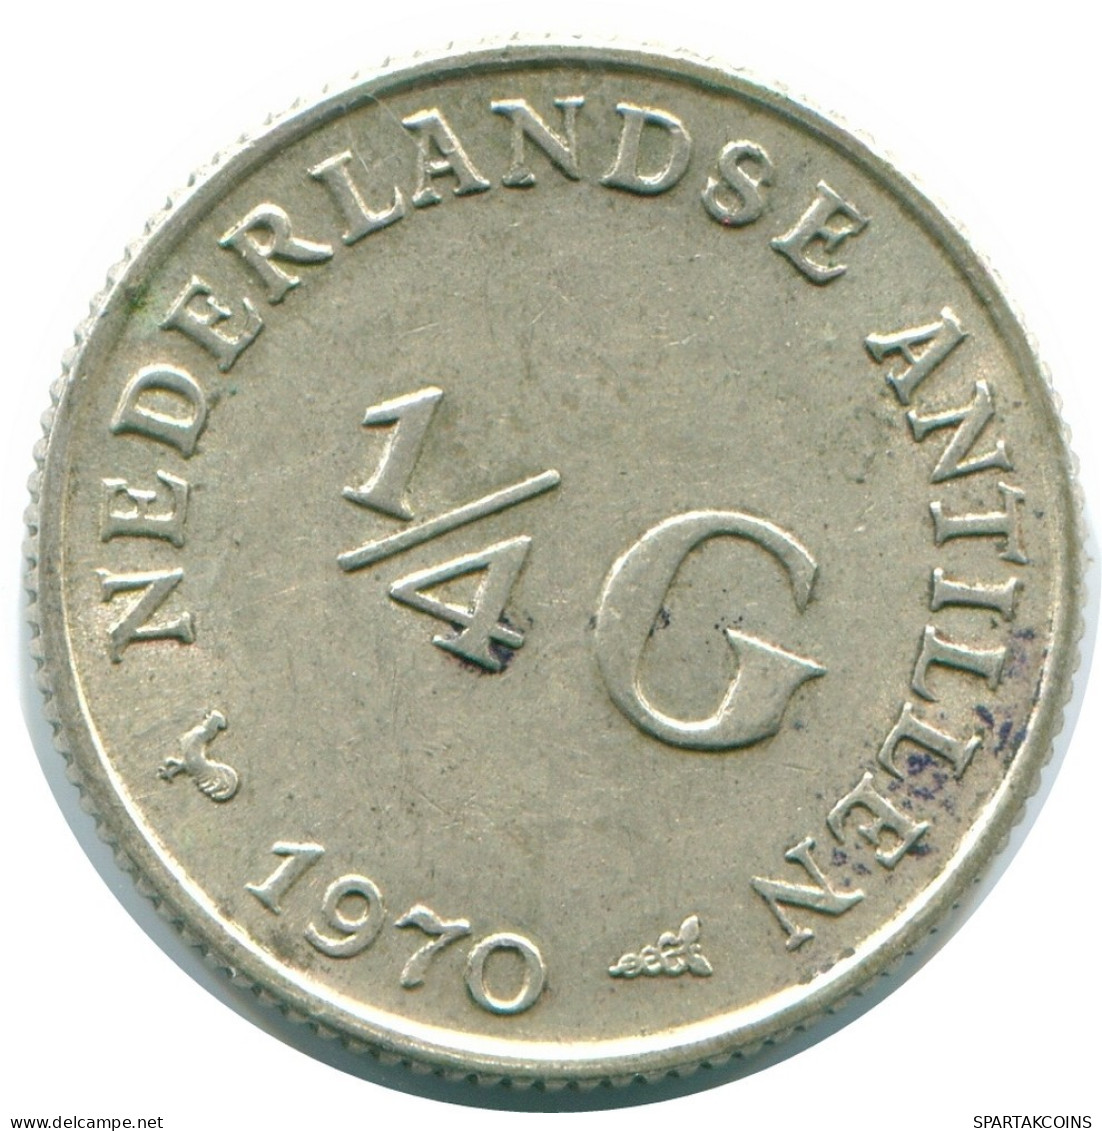 1/4 GULDEN 1970 NIEDERLÄNDISCHE ANTILLEN SILBER Koloniale Münze #NL11693.4.D.A - Antille Olandesi